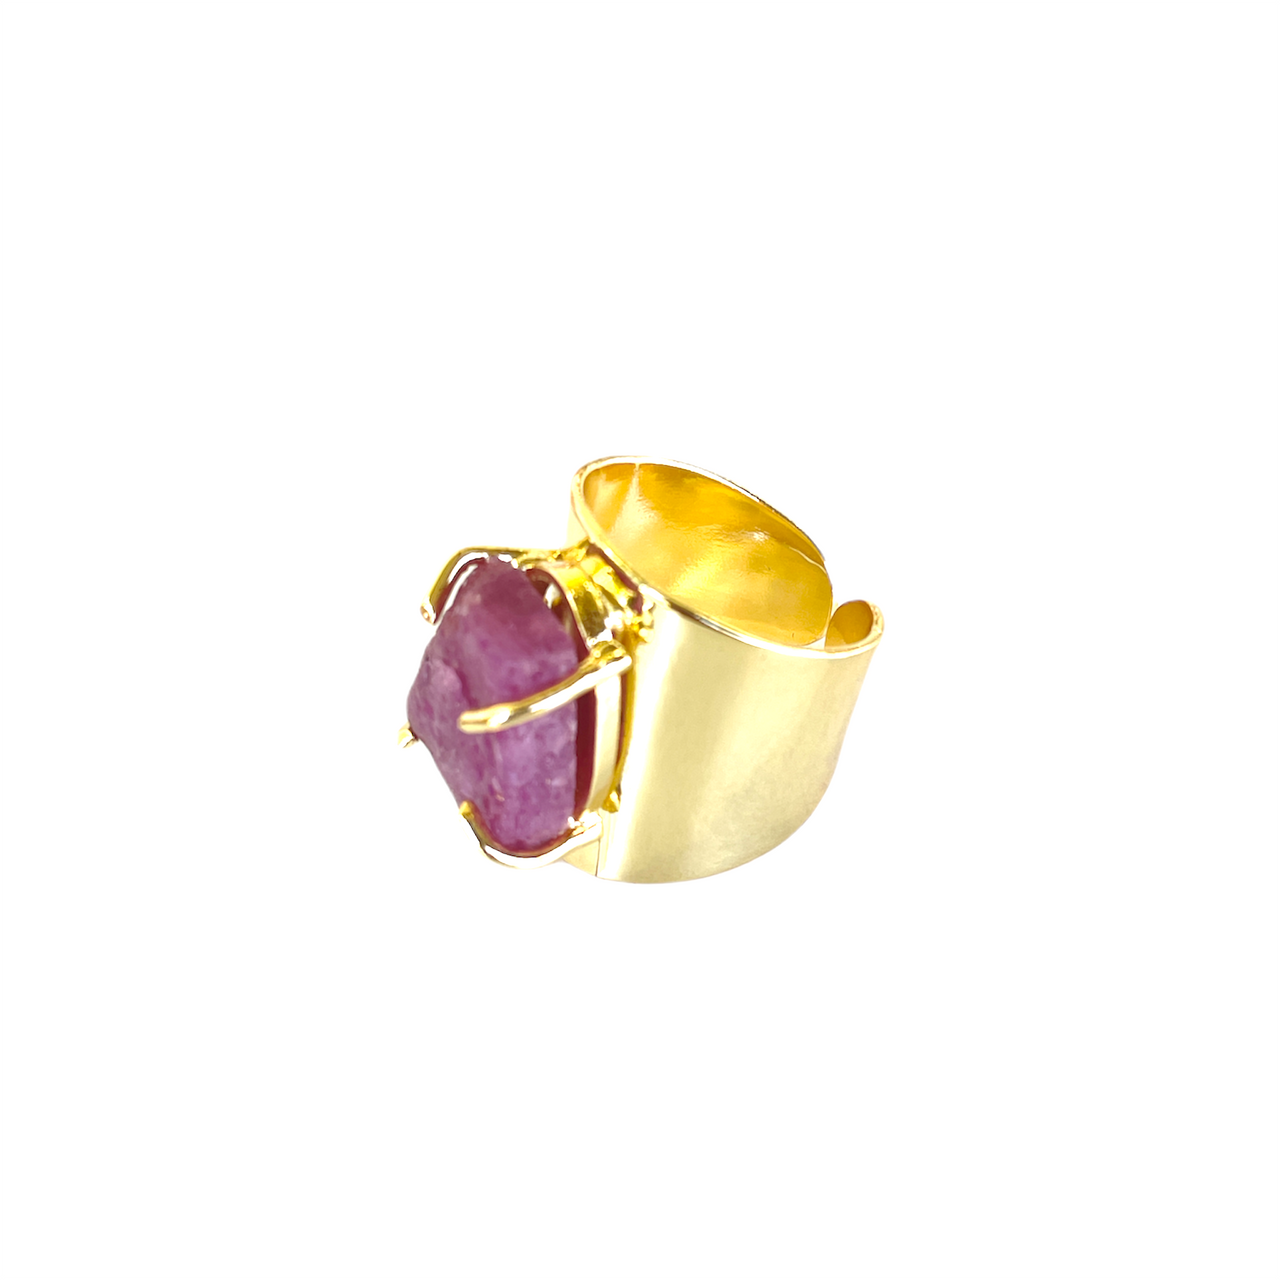 Espectacular anillo de bronce con baño de oro. El detalle central es una preciosa piedra de amatista natural. Este anillo es ajustable lo que lo hace perfecto. Además es super combinable con tu look favorito. Lateral